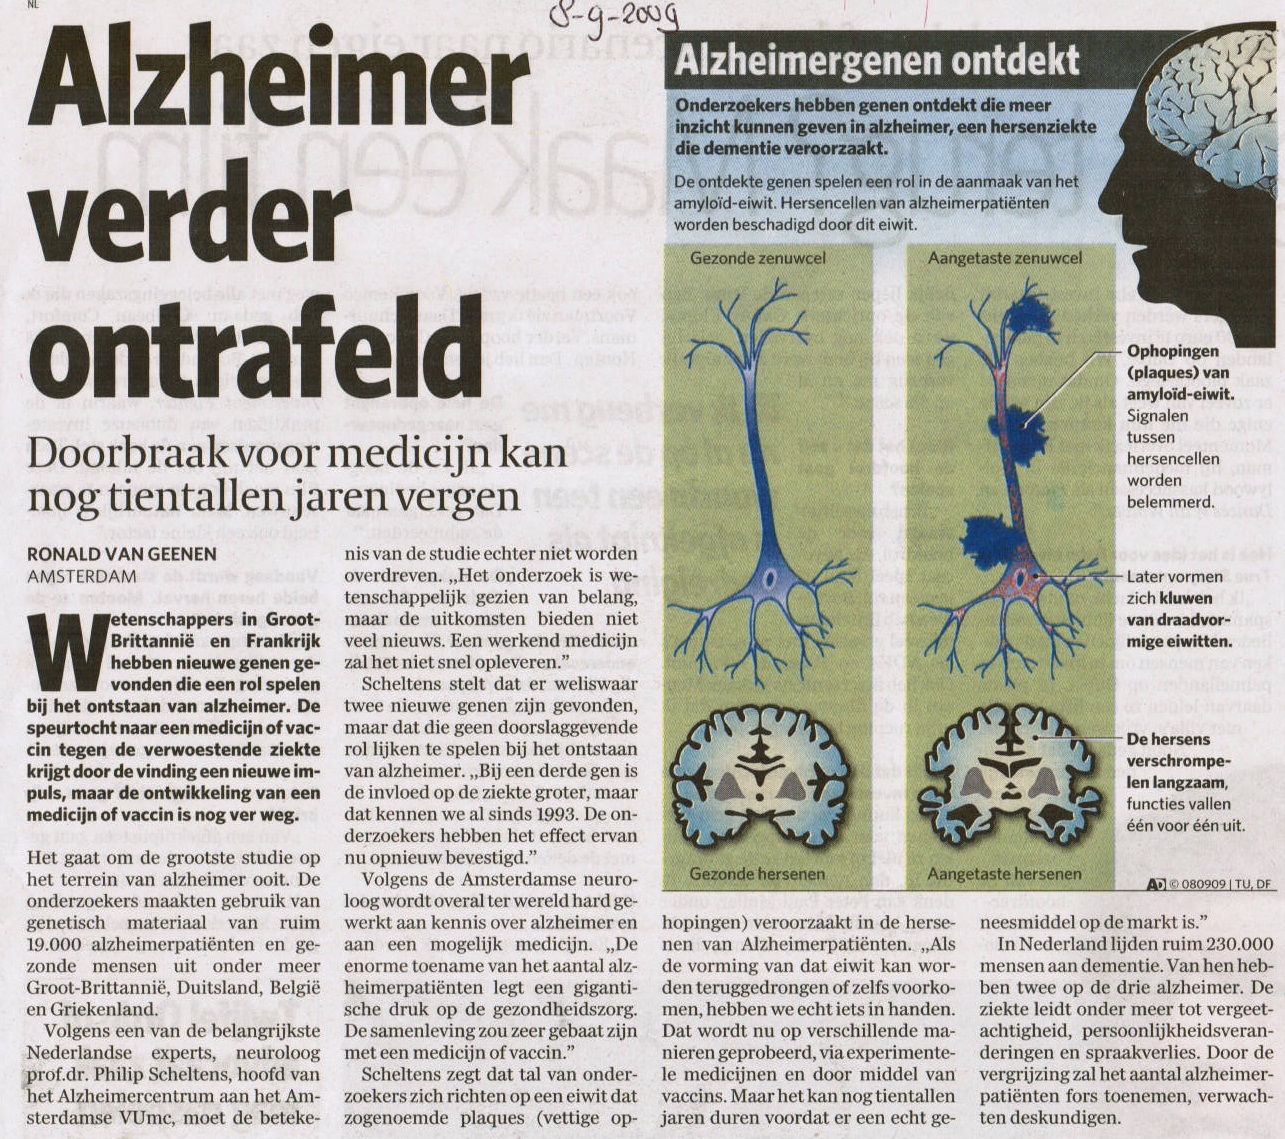 Alzheimer verder ontrafeld